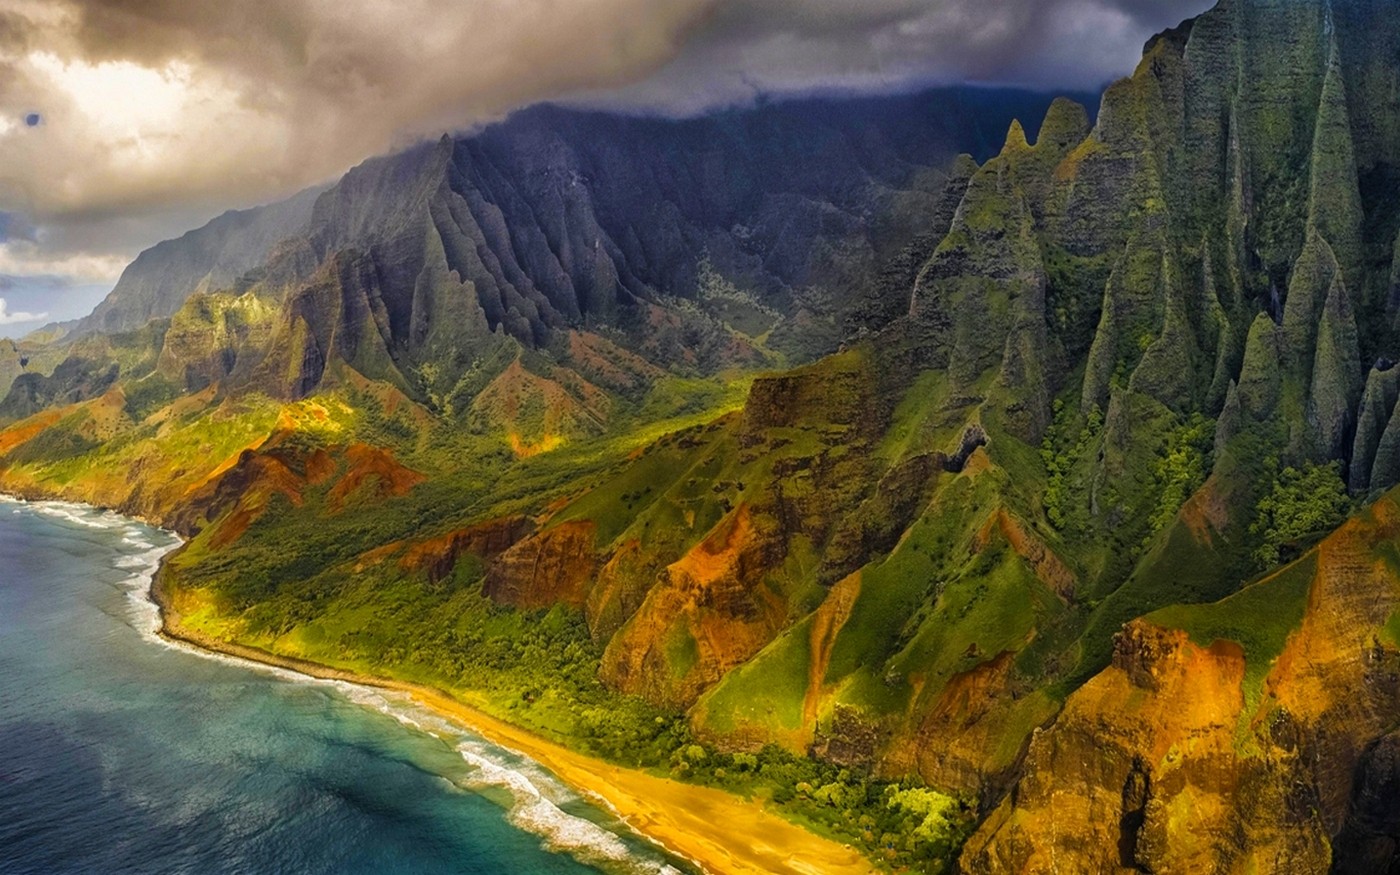 General 1400x875 nature landscape aerial view mountains beach sea cliff clouds coast island Kauai Hawaii USA